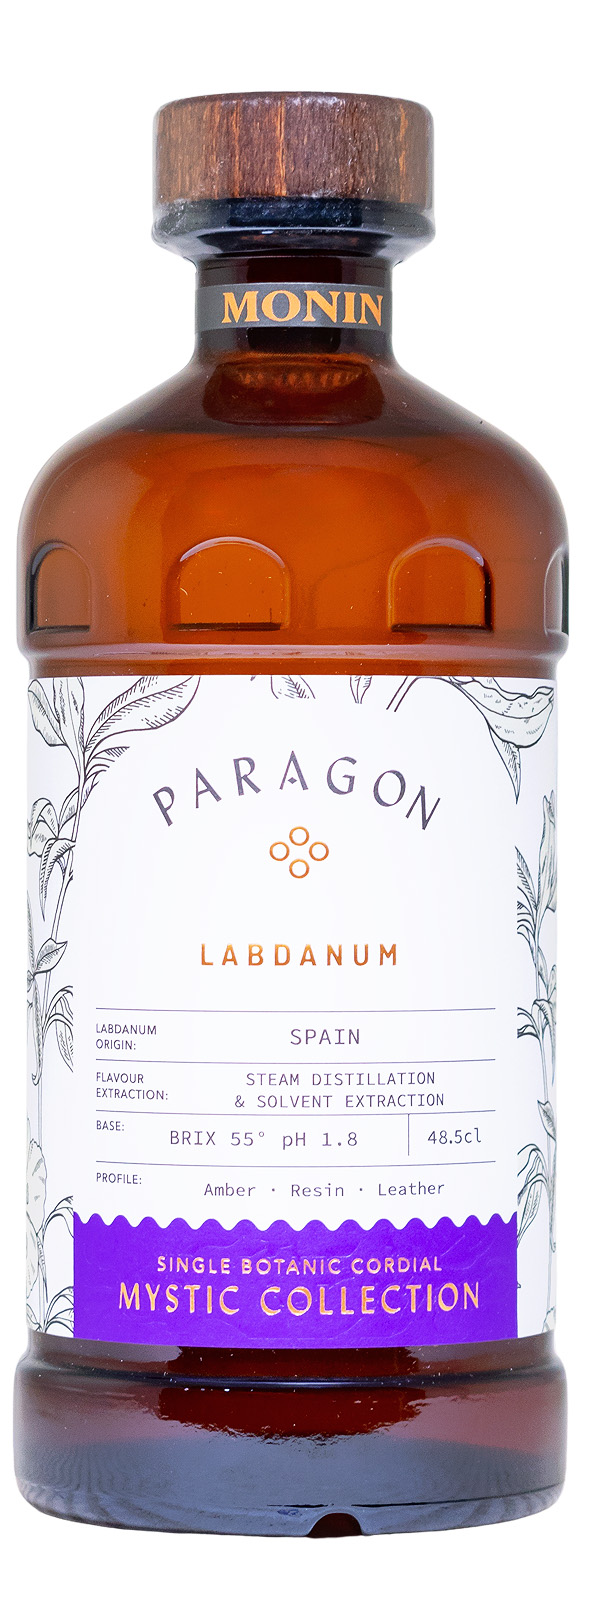 Paragon Labdanum Cordial Mixer - 0,485L